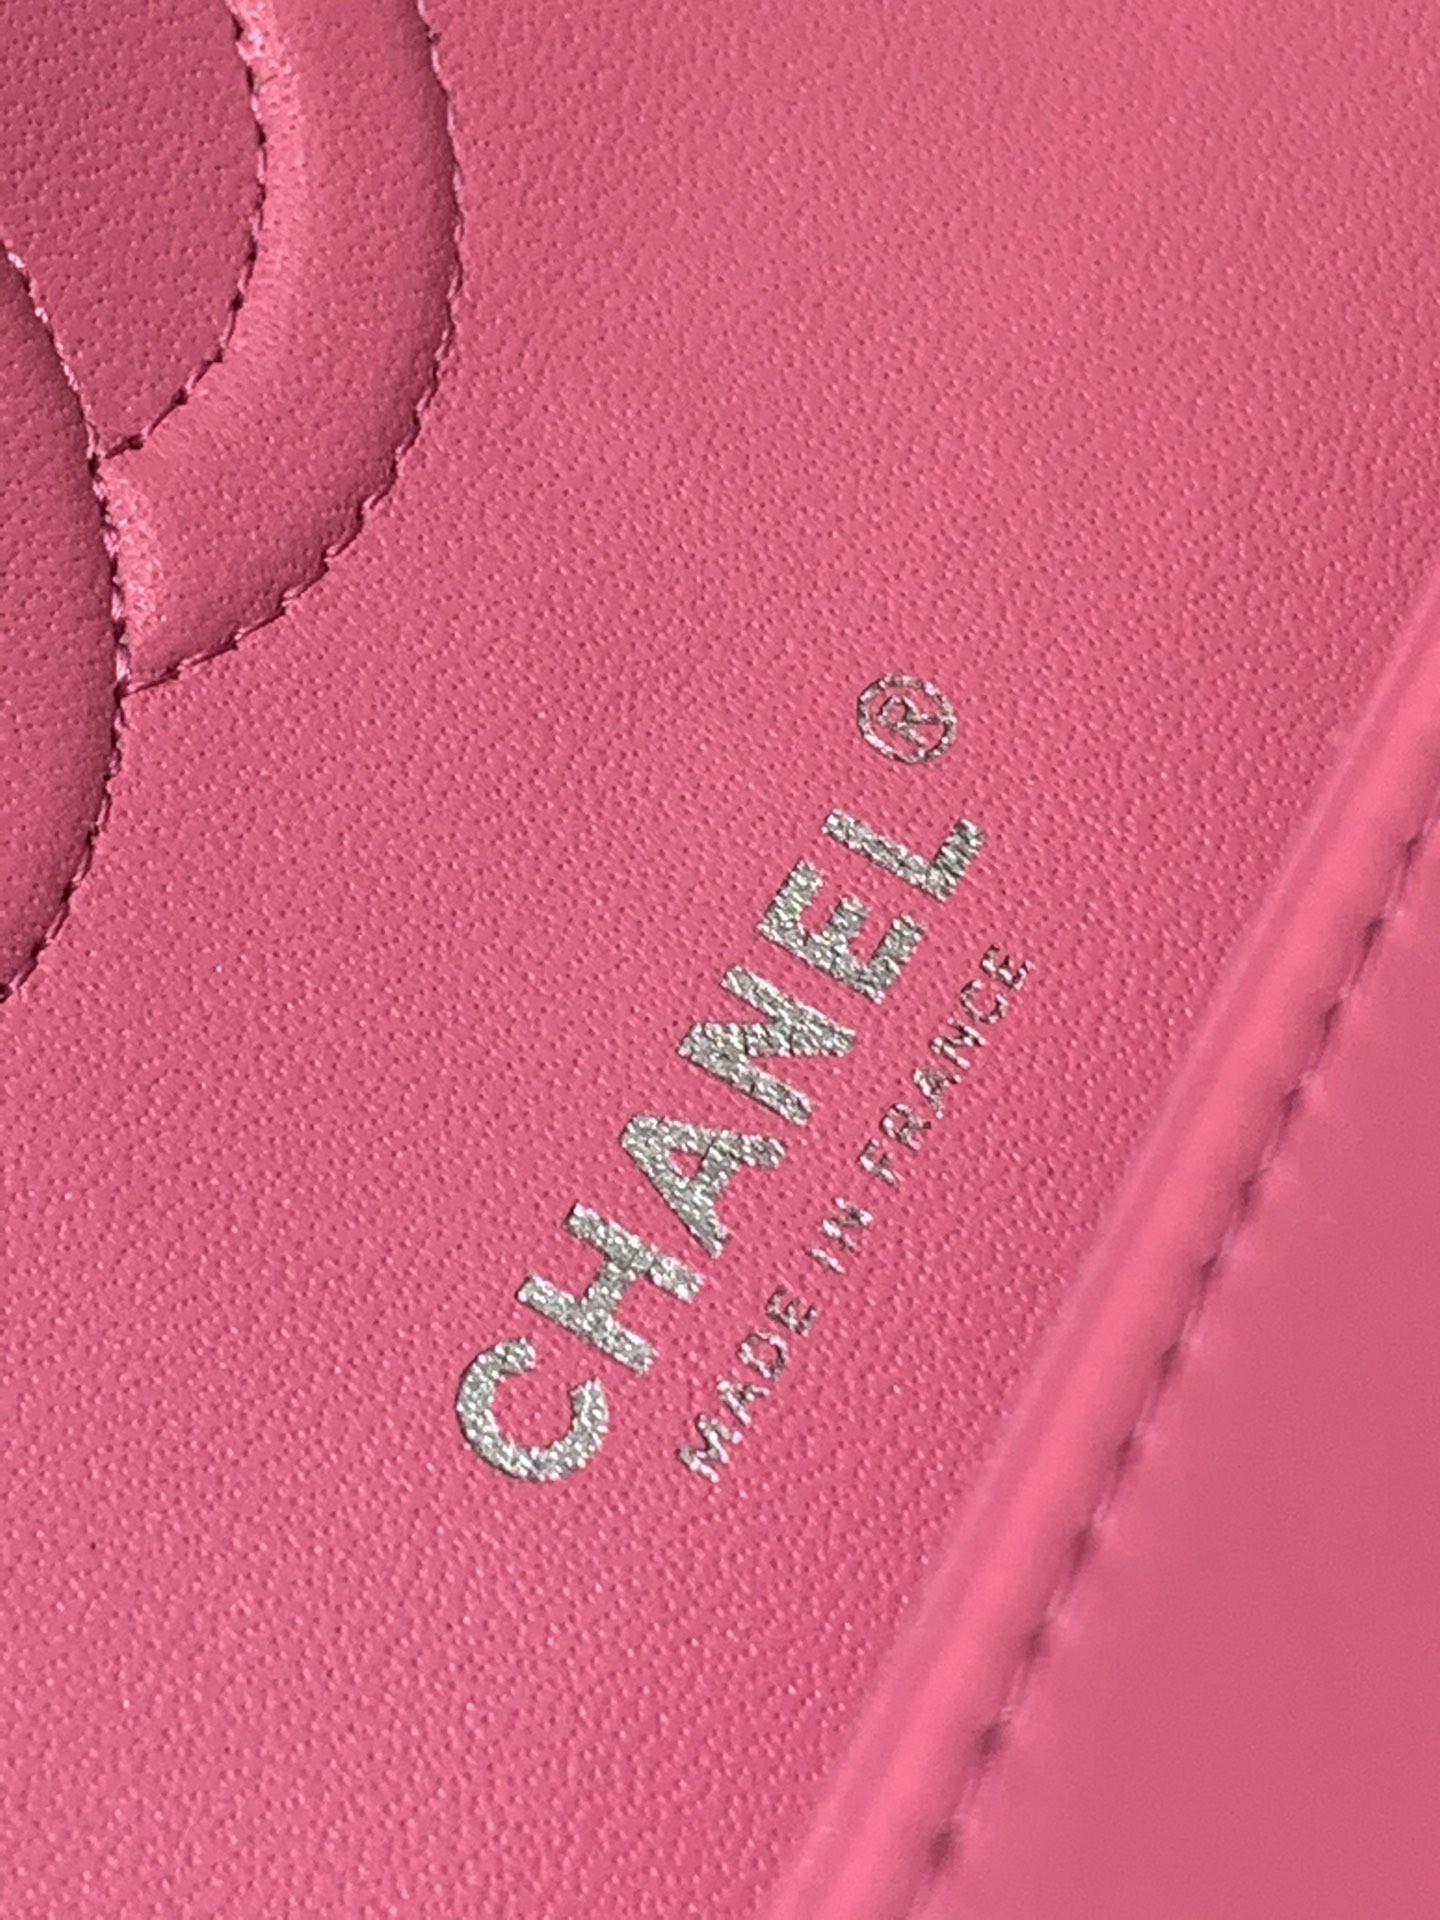 【真品级】Chanel CF 25  原厂bodin joyeux 羔羊皮  经典永远百搭 2022流行色 色蜜桃 银扣